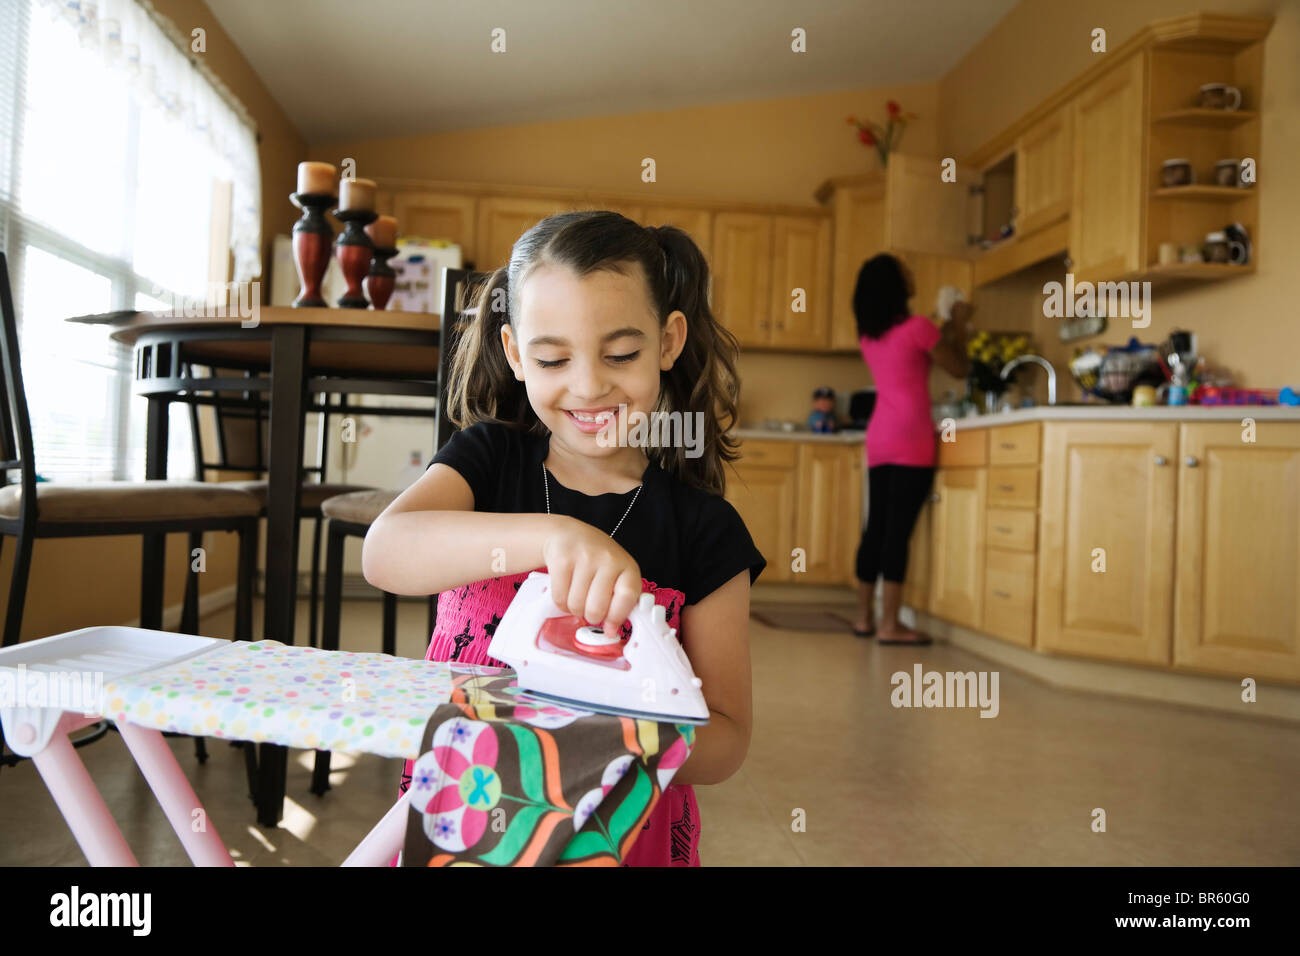 Girl toy Fer et table à repasser dans la cuisine Banque D'Images